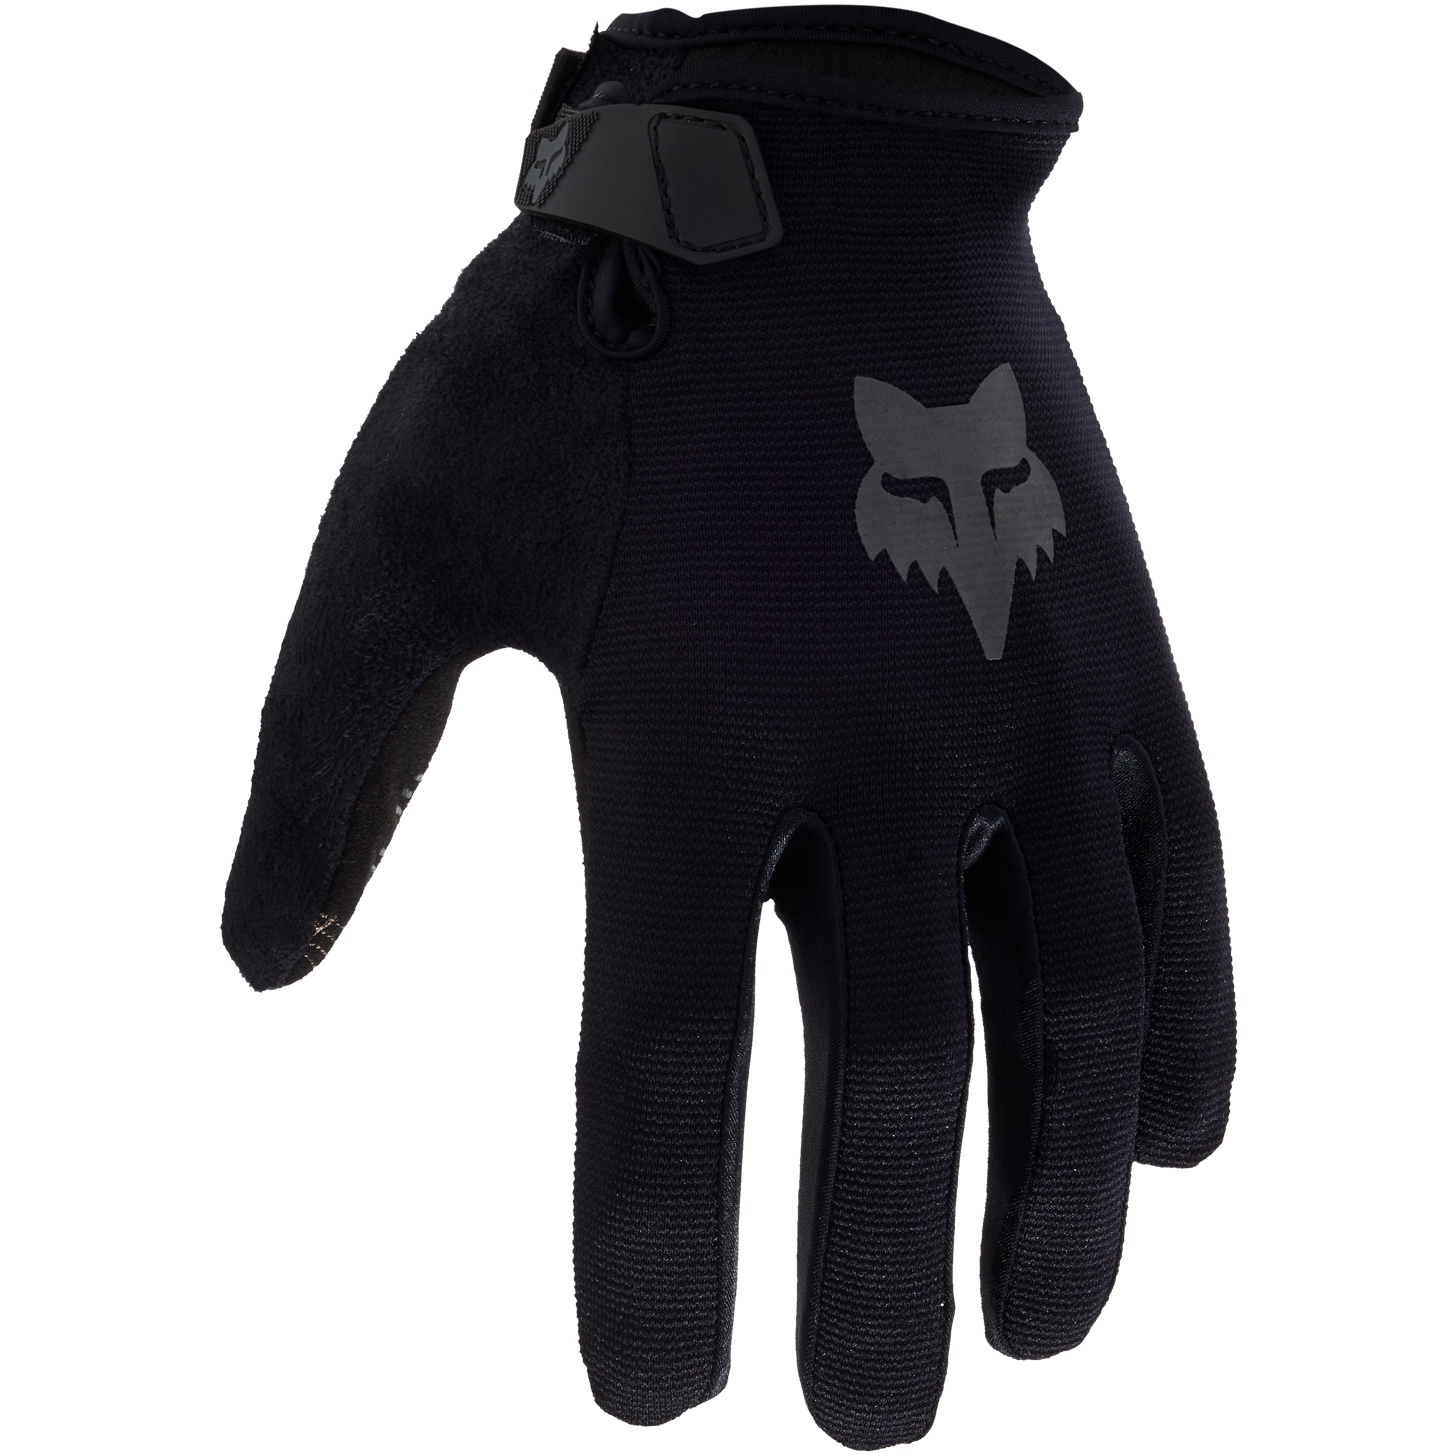 Produktbild von FOX Ranger MTB Handschuhe - schwarz